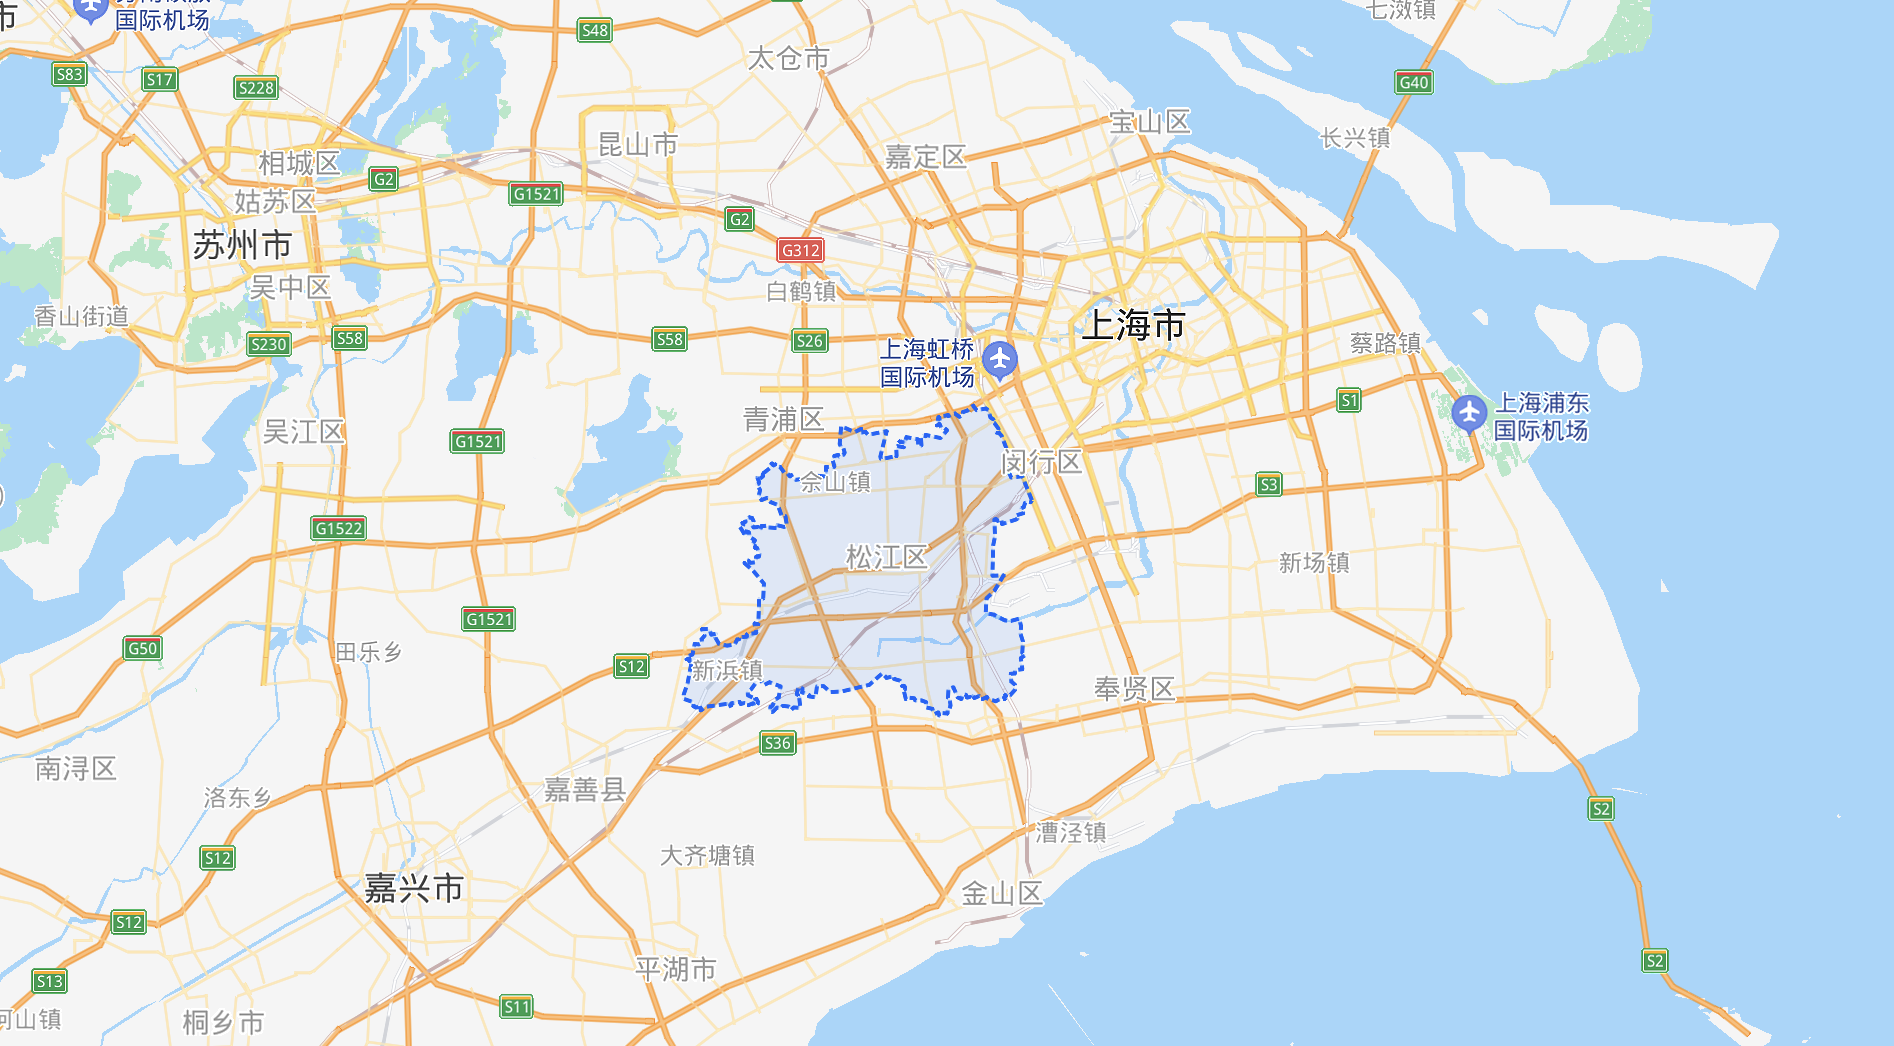 上海松江区中心医院一人新冠检测异常,相关人员正在排查中,目前情况